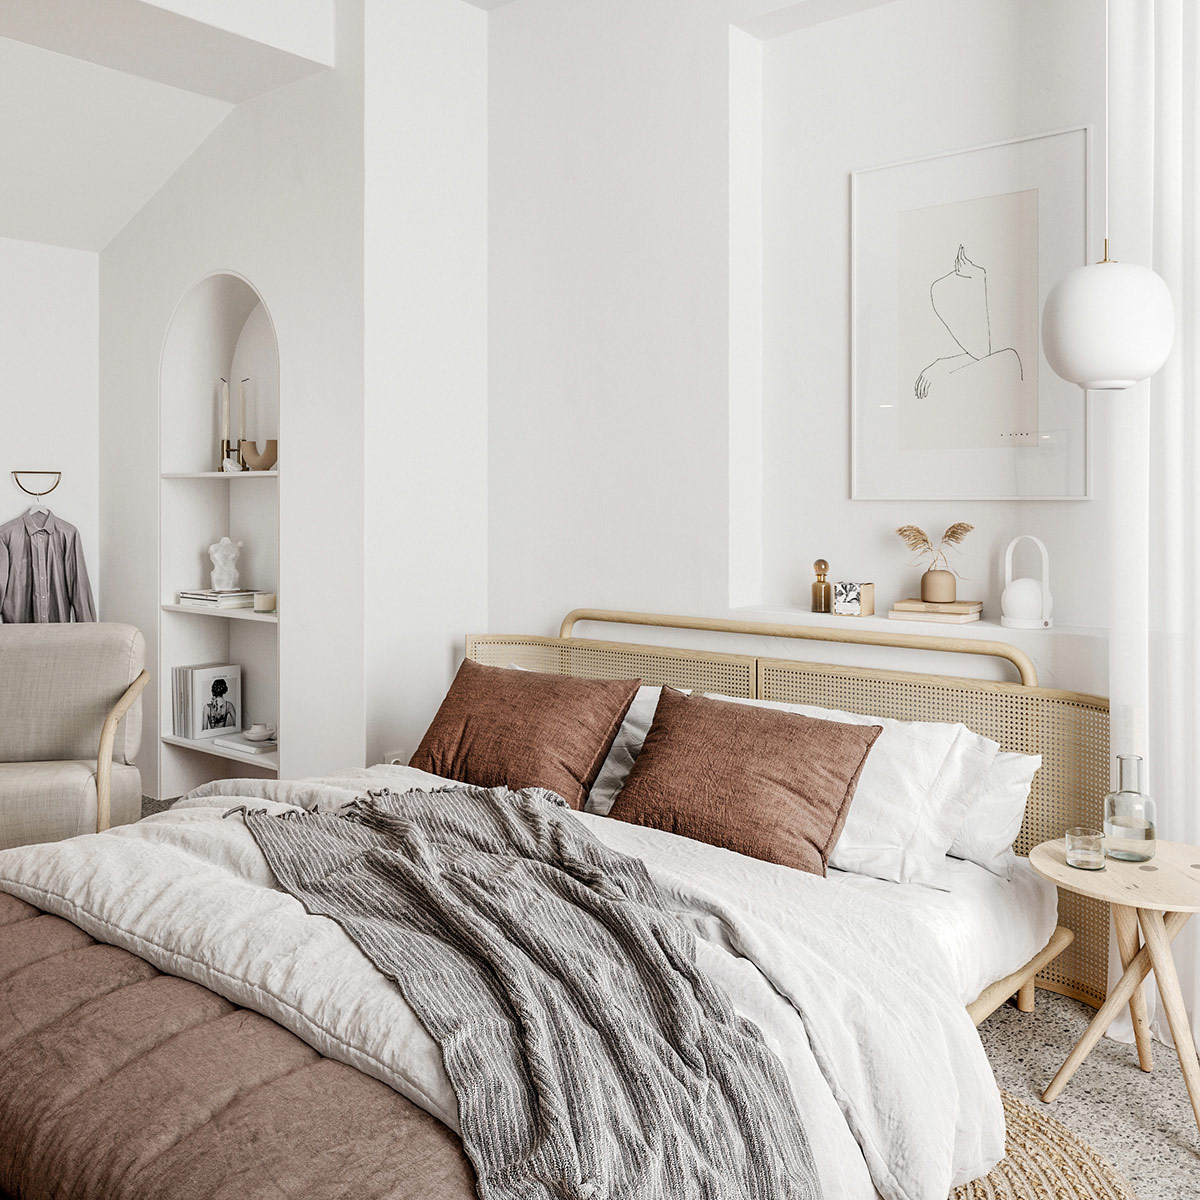 cozy-bedroom-1-600x600.jpg